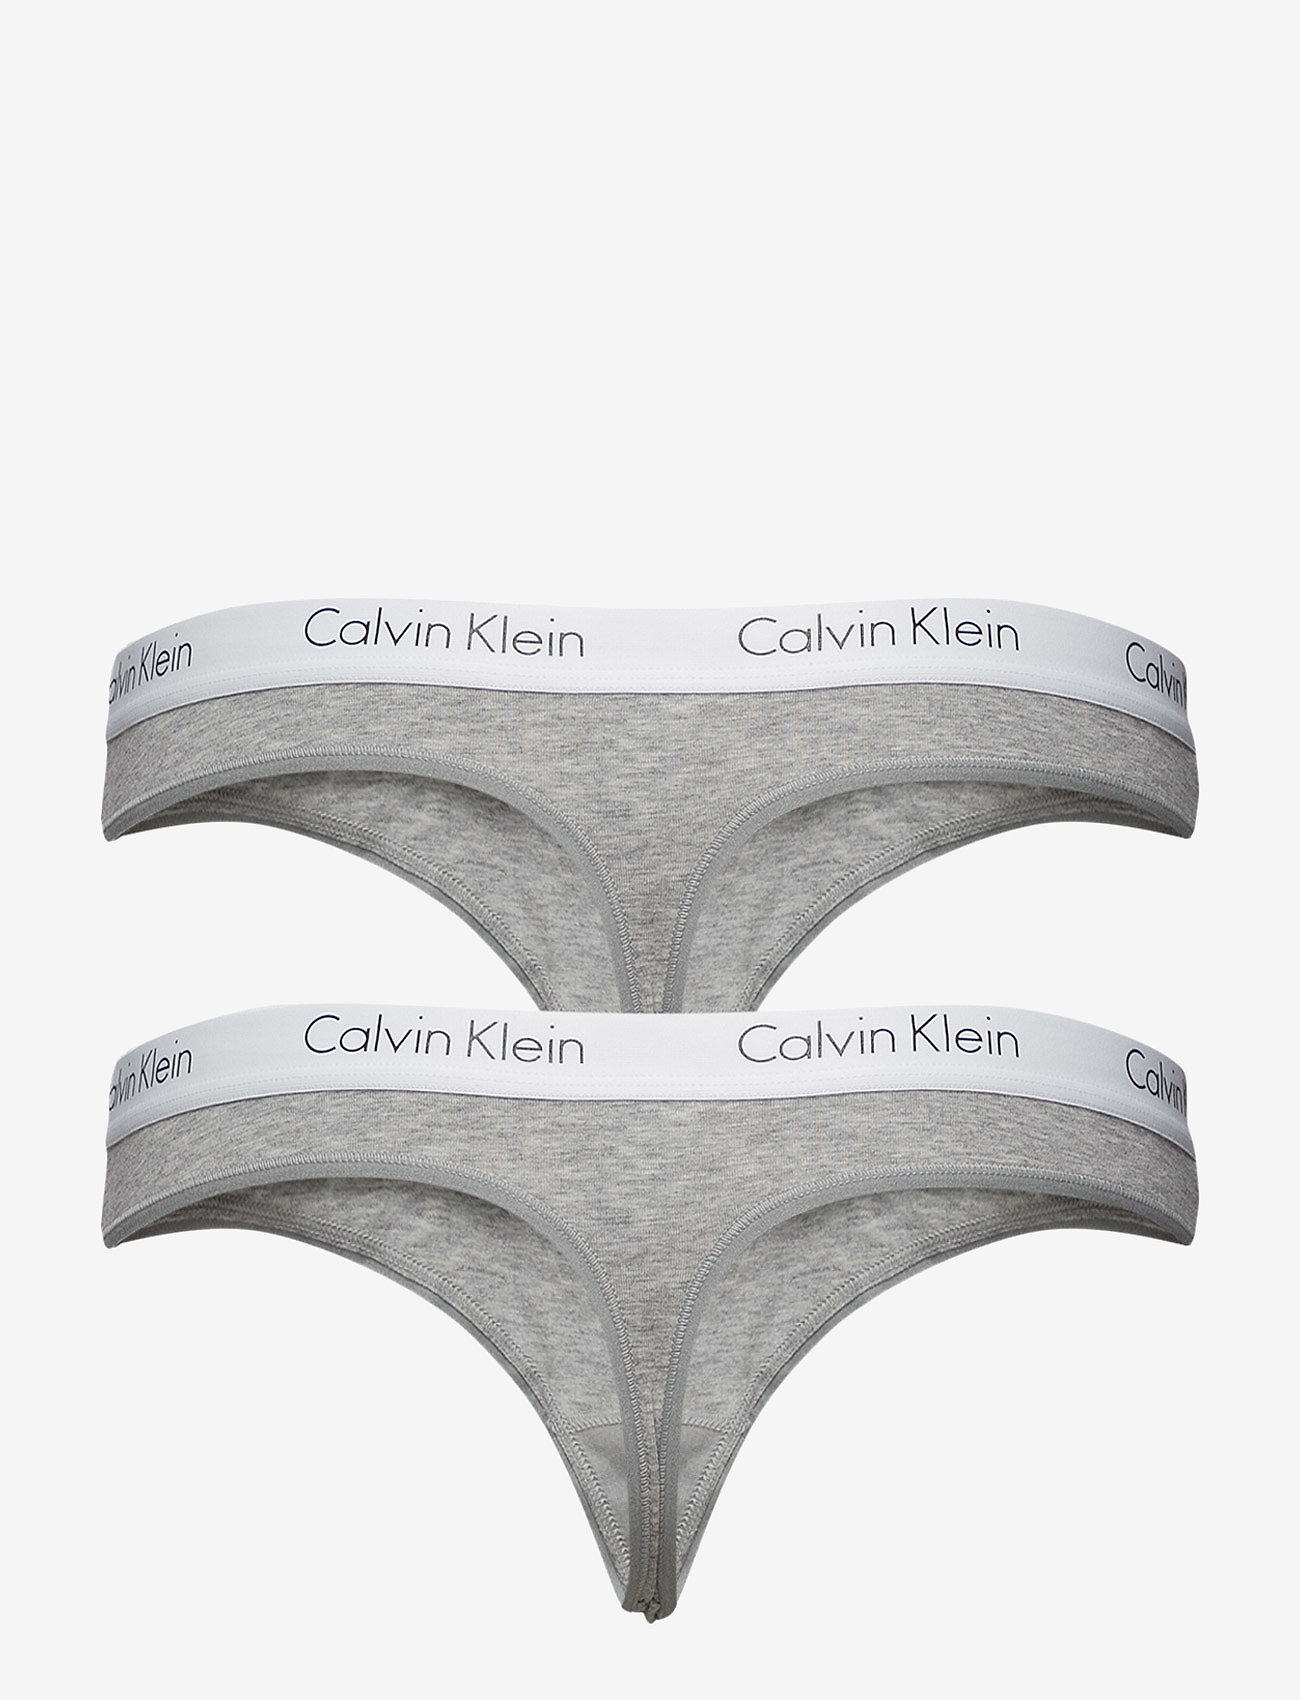 calvin klein gray thong